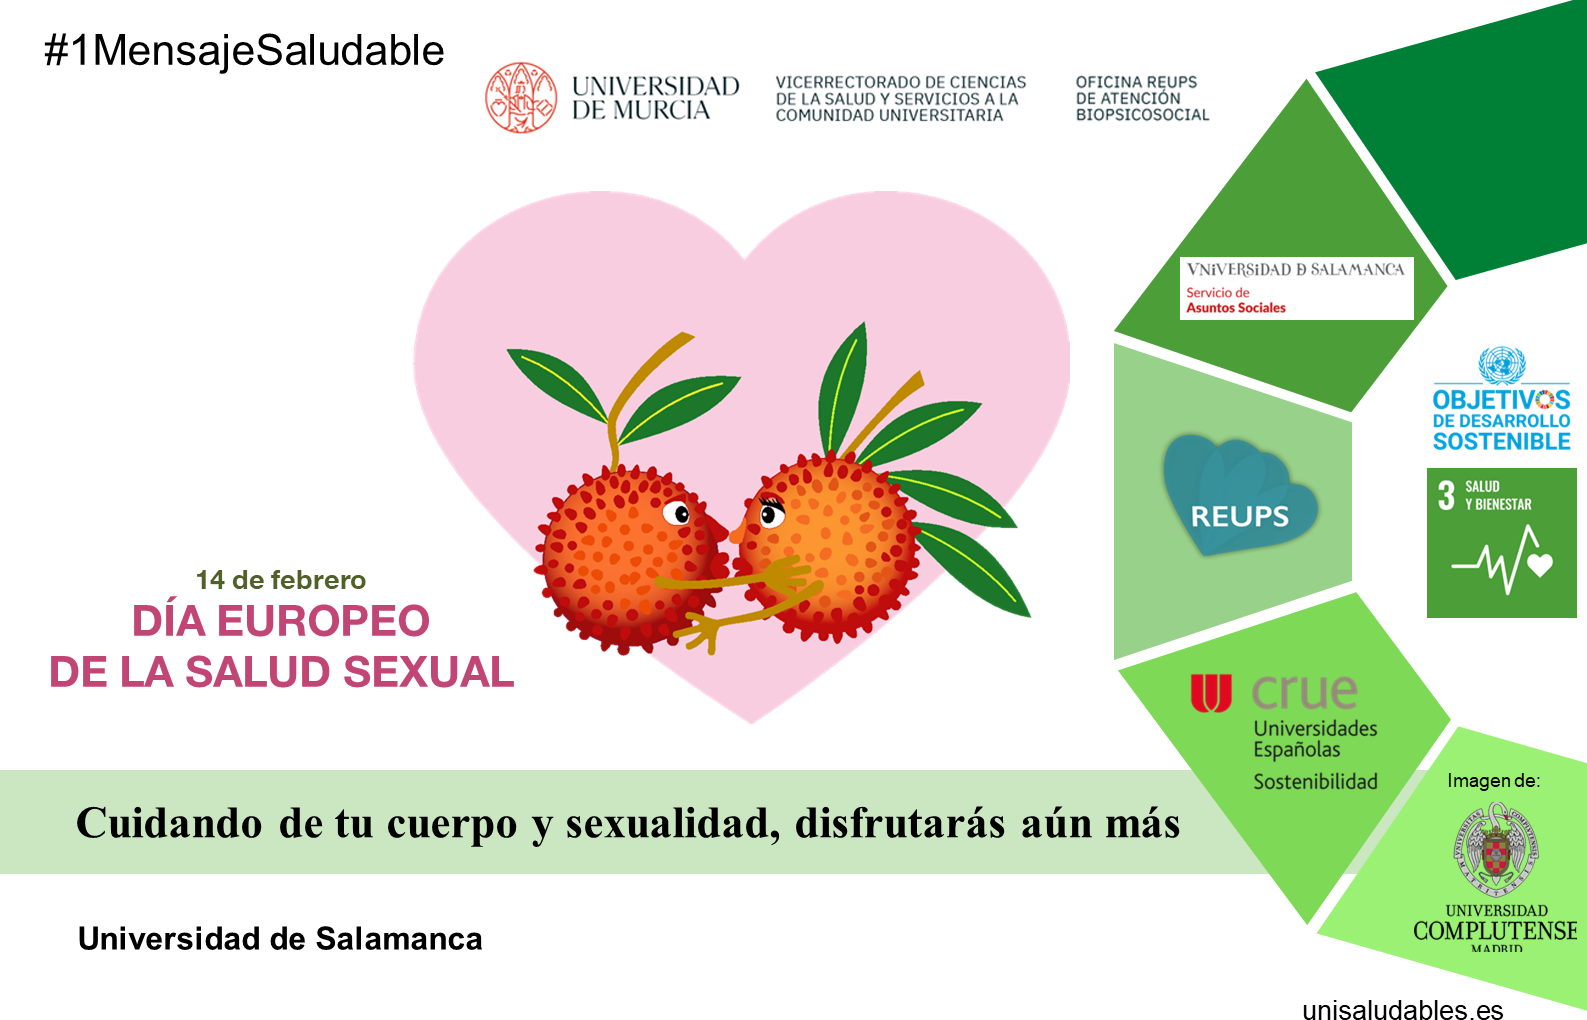 14 de febrero: Día Europeo de la Salud Sexual